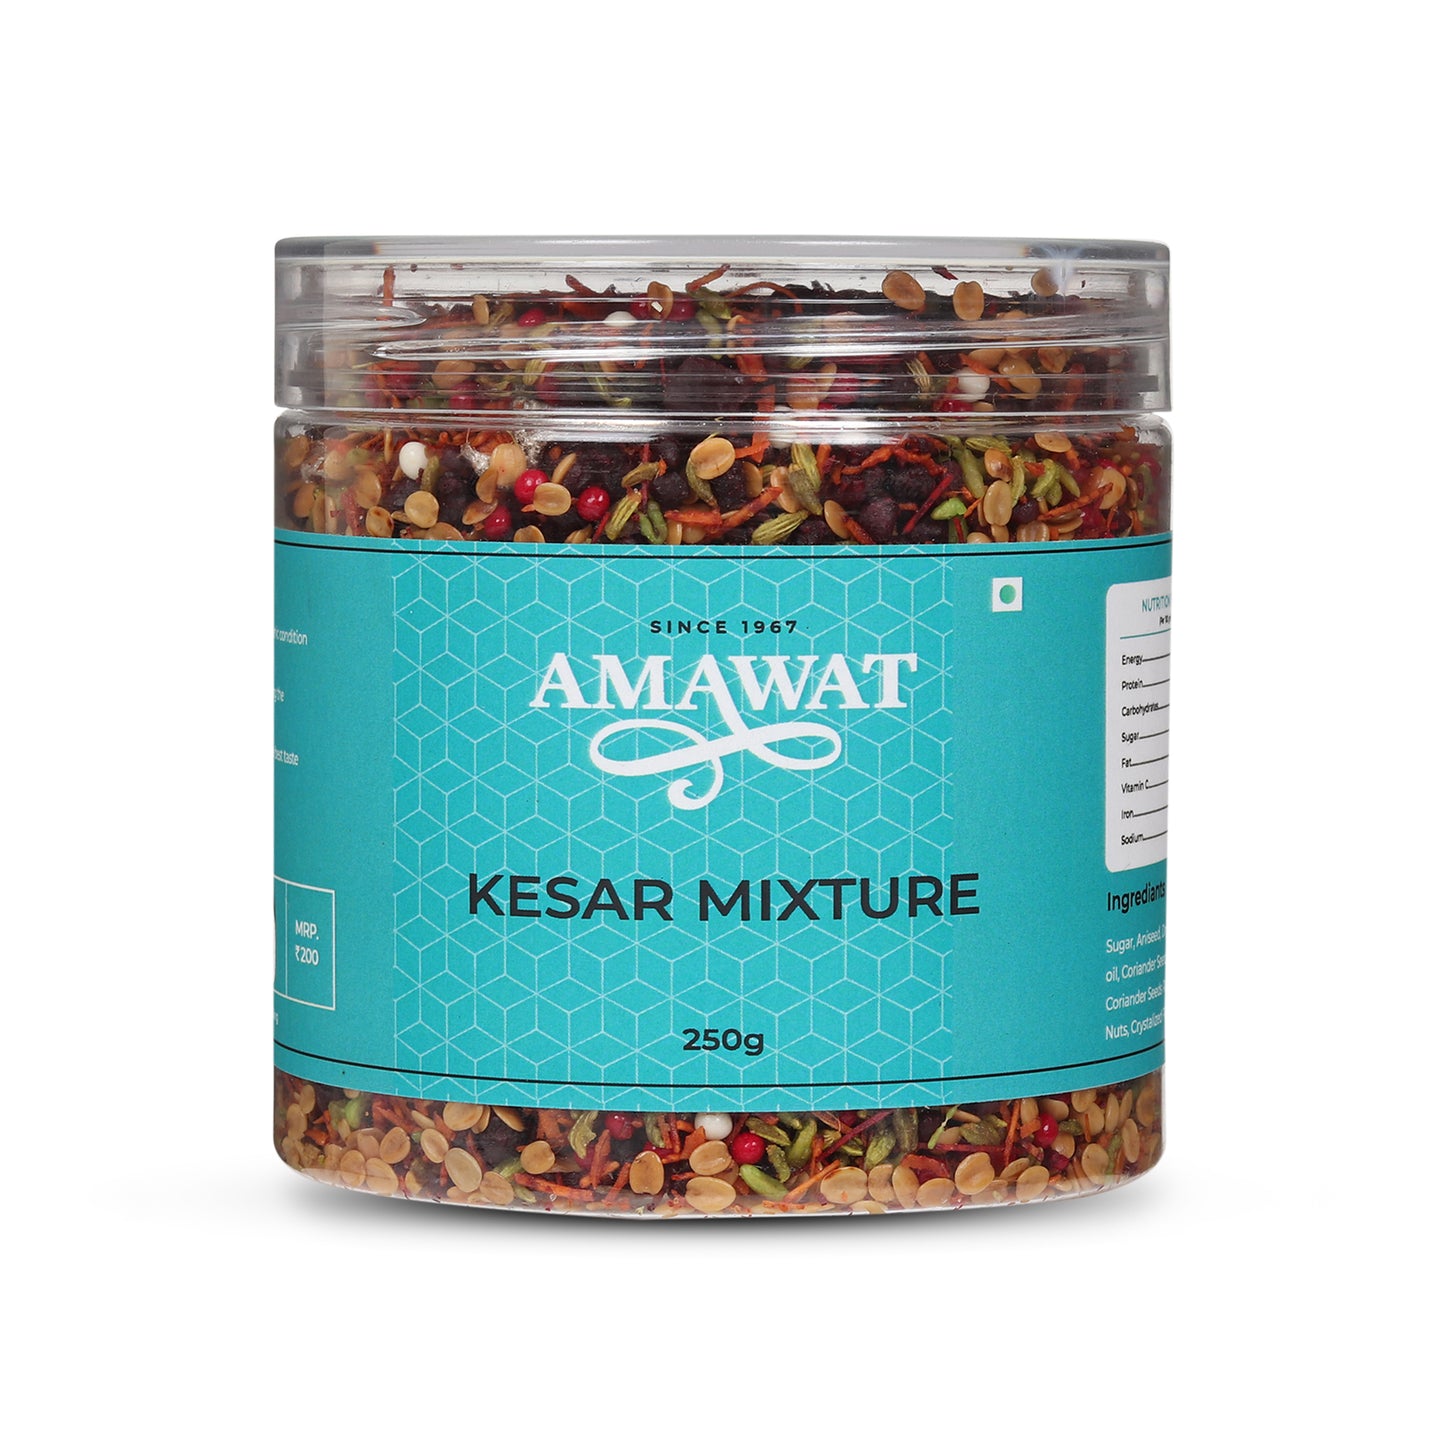  Buy Kesar Mixture From amawat